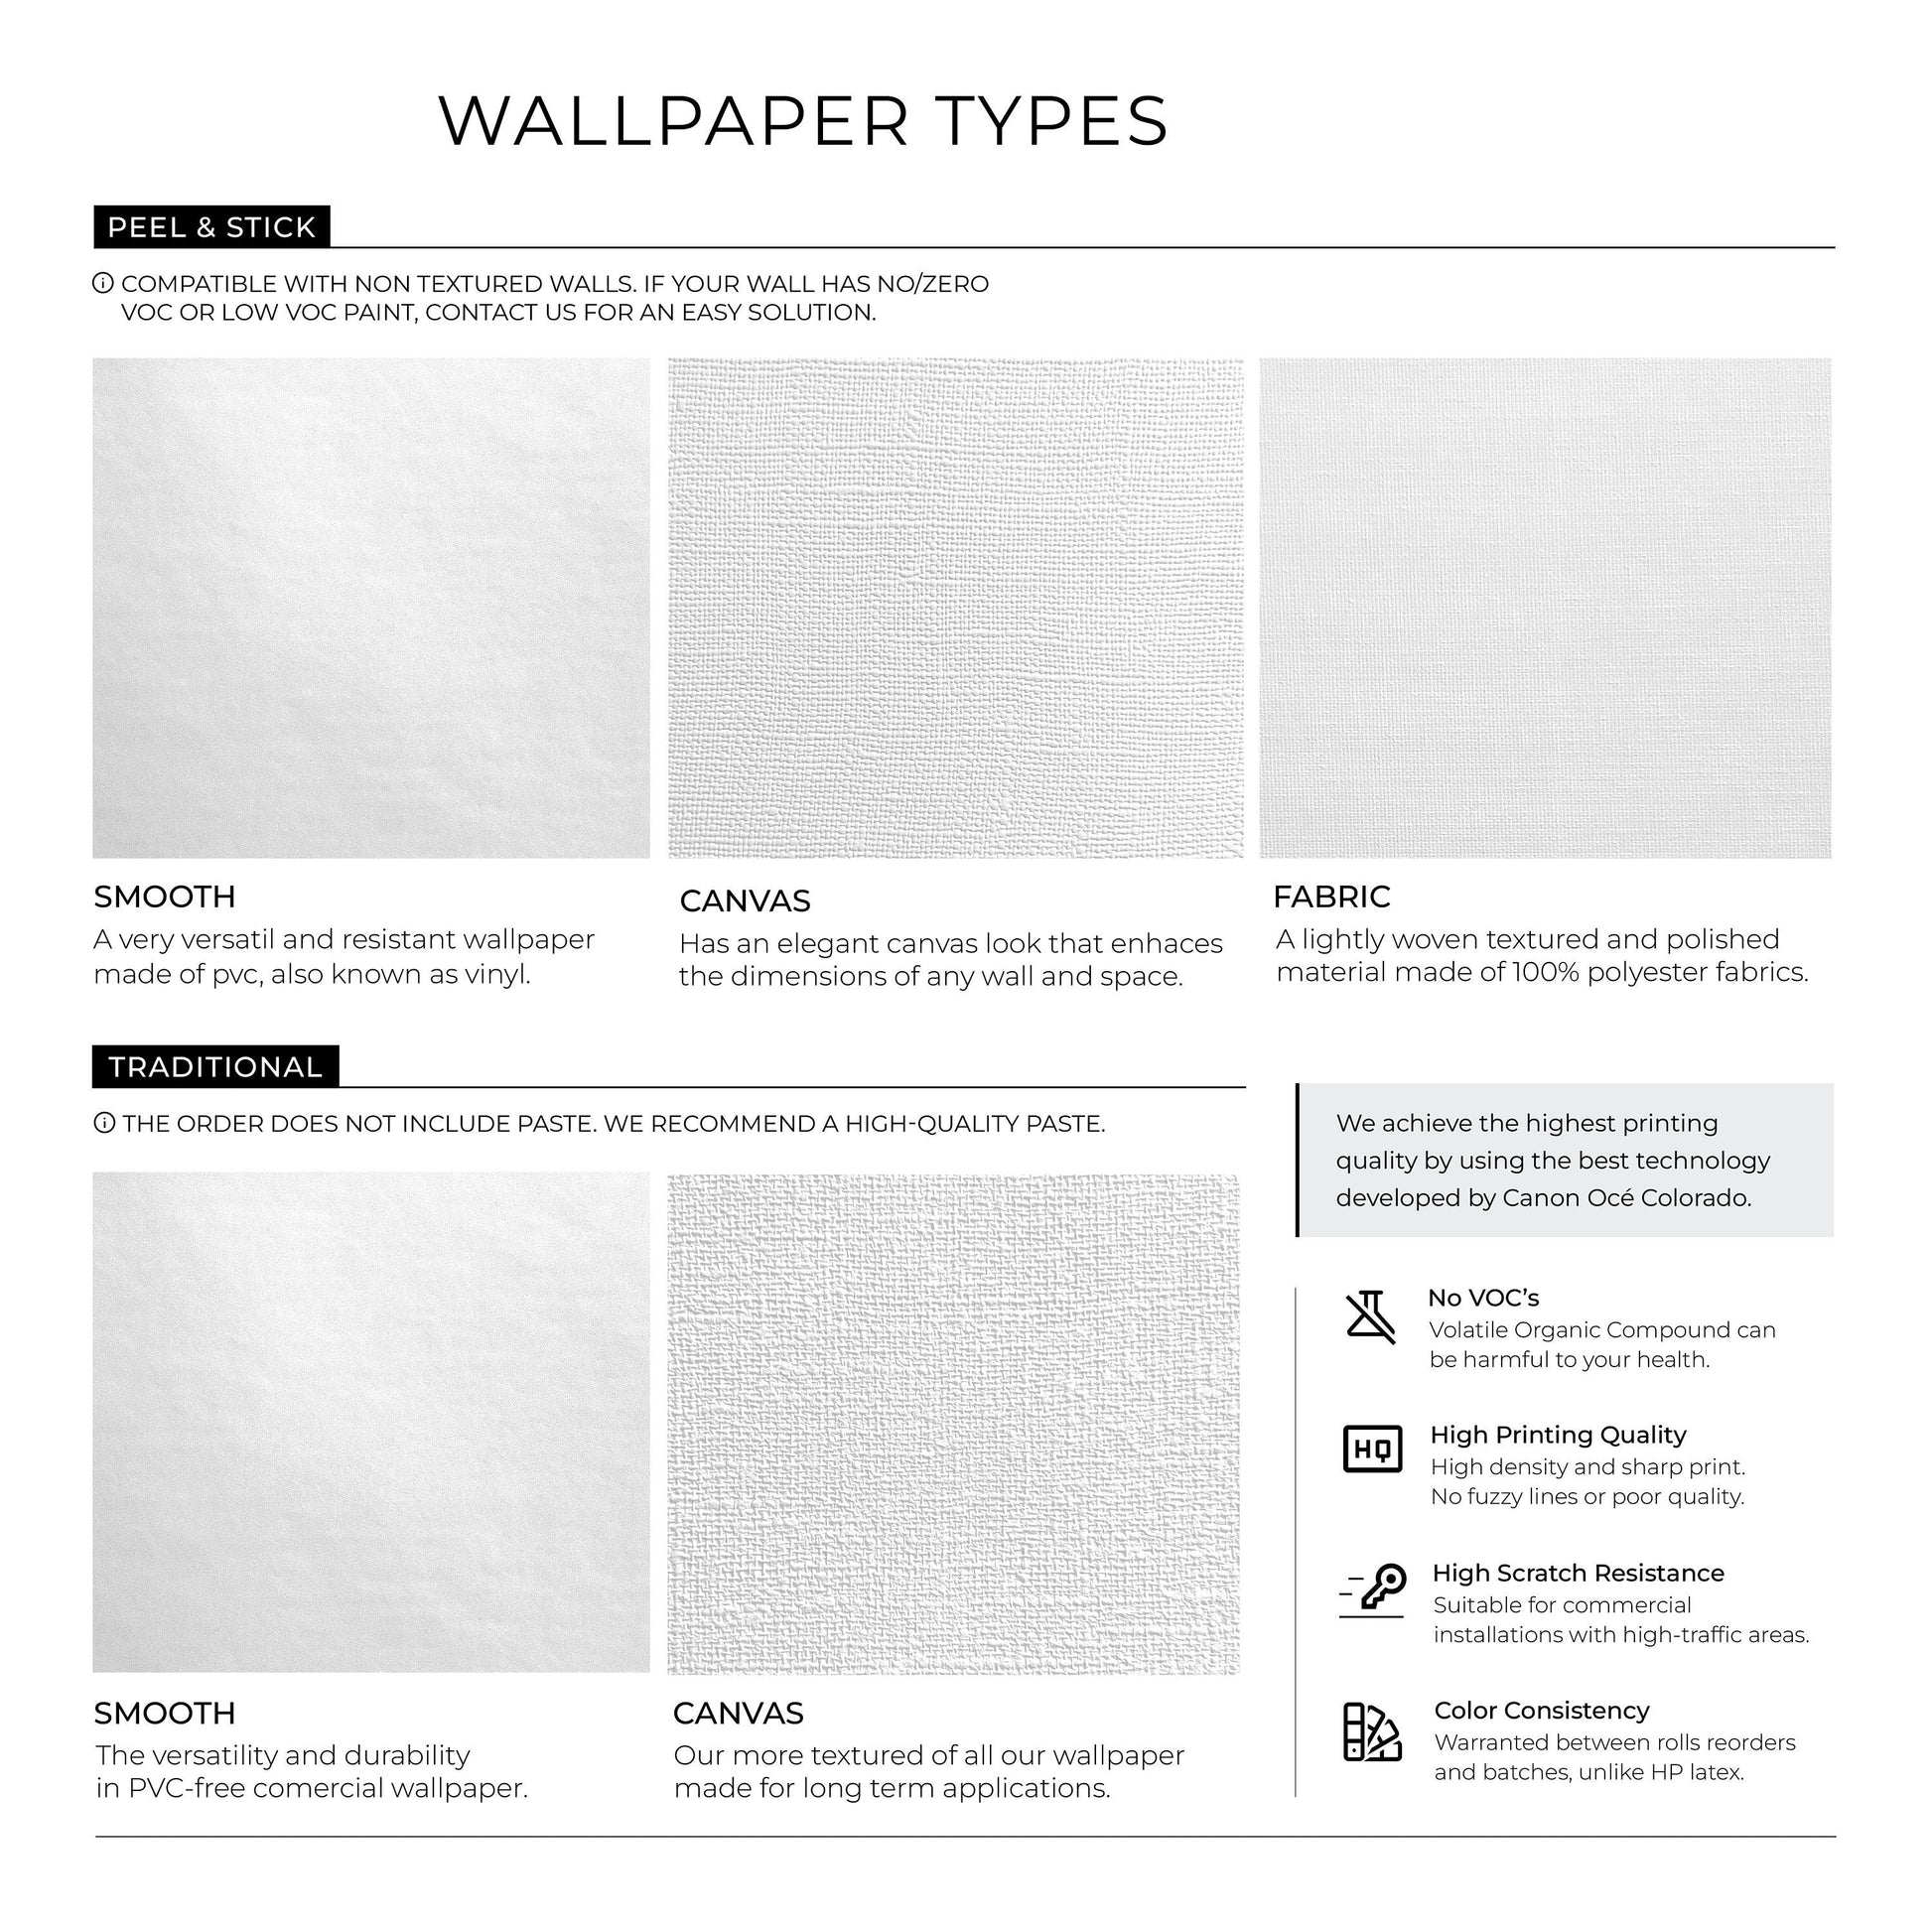 Removable Wallpaper Scandinavian Wallpaper Plants Wallpaper Peel and Stick Wallpaper Wall Paper - A857